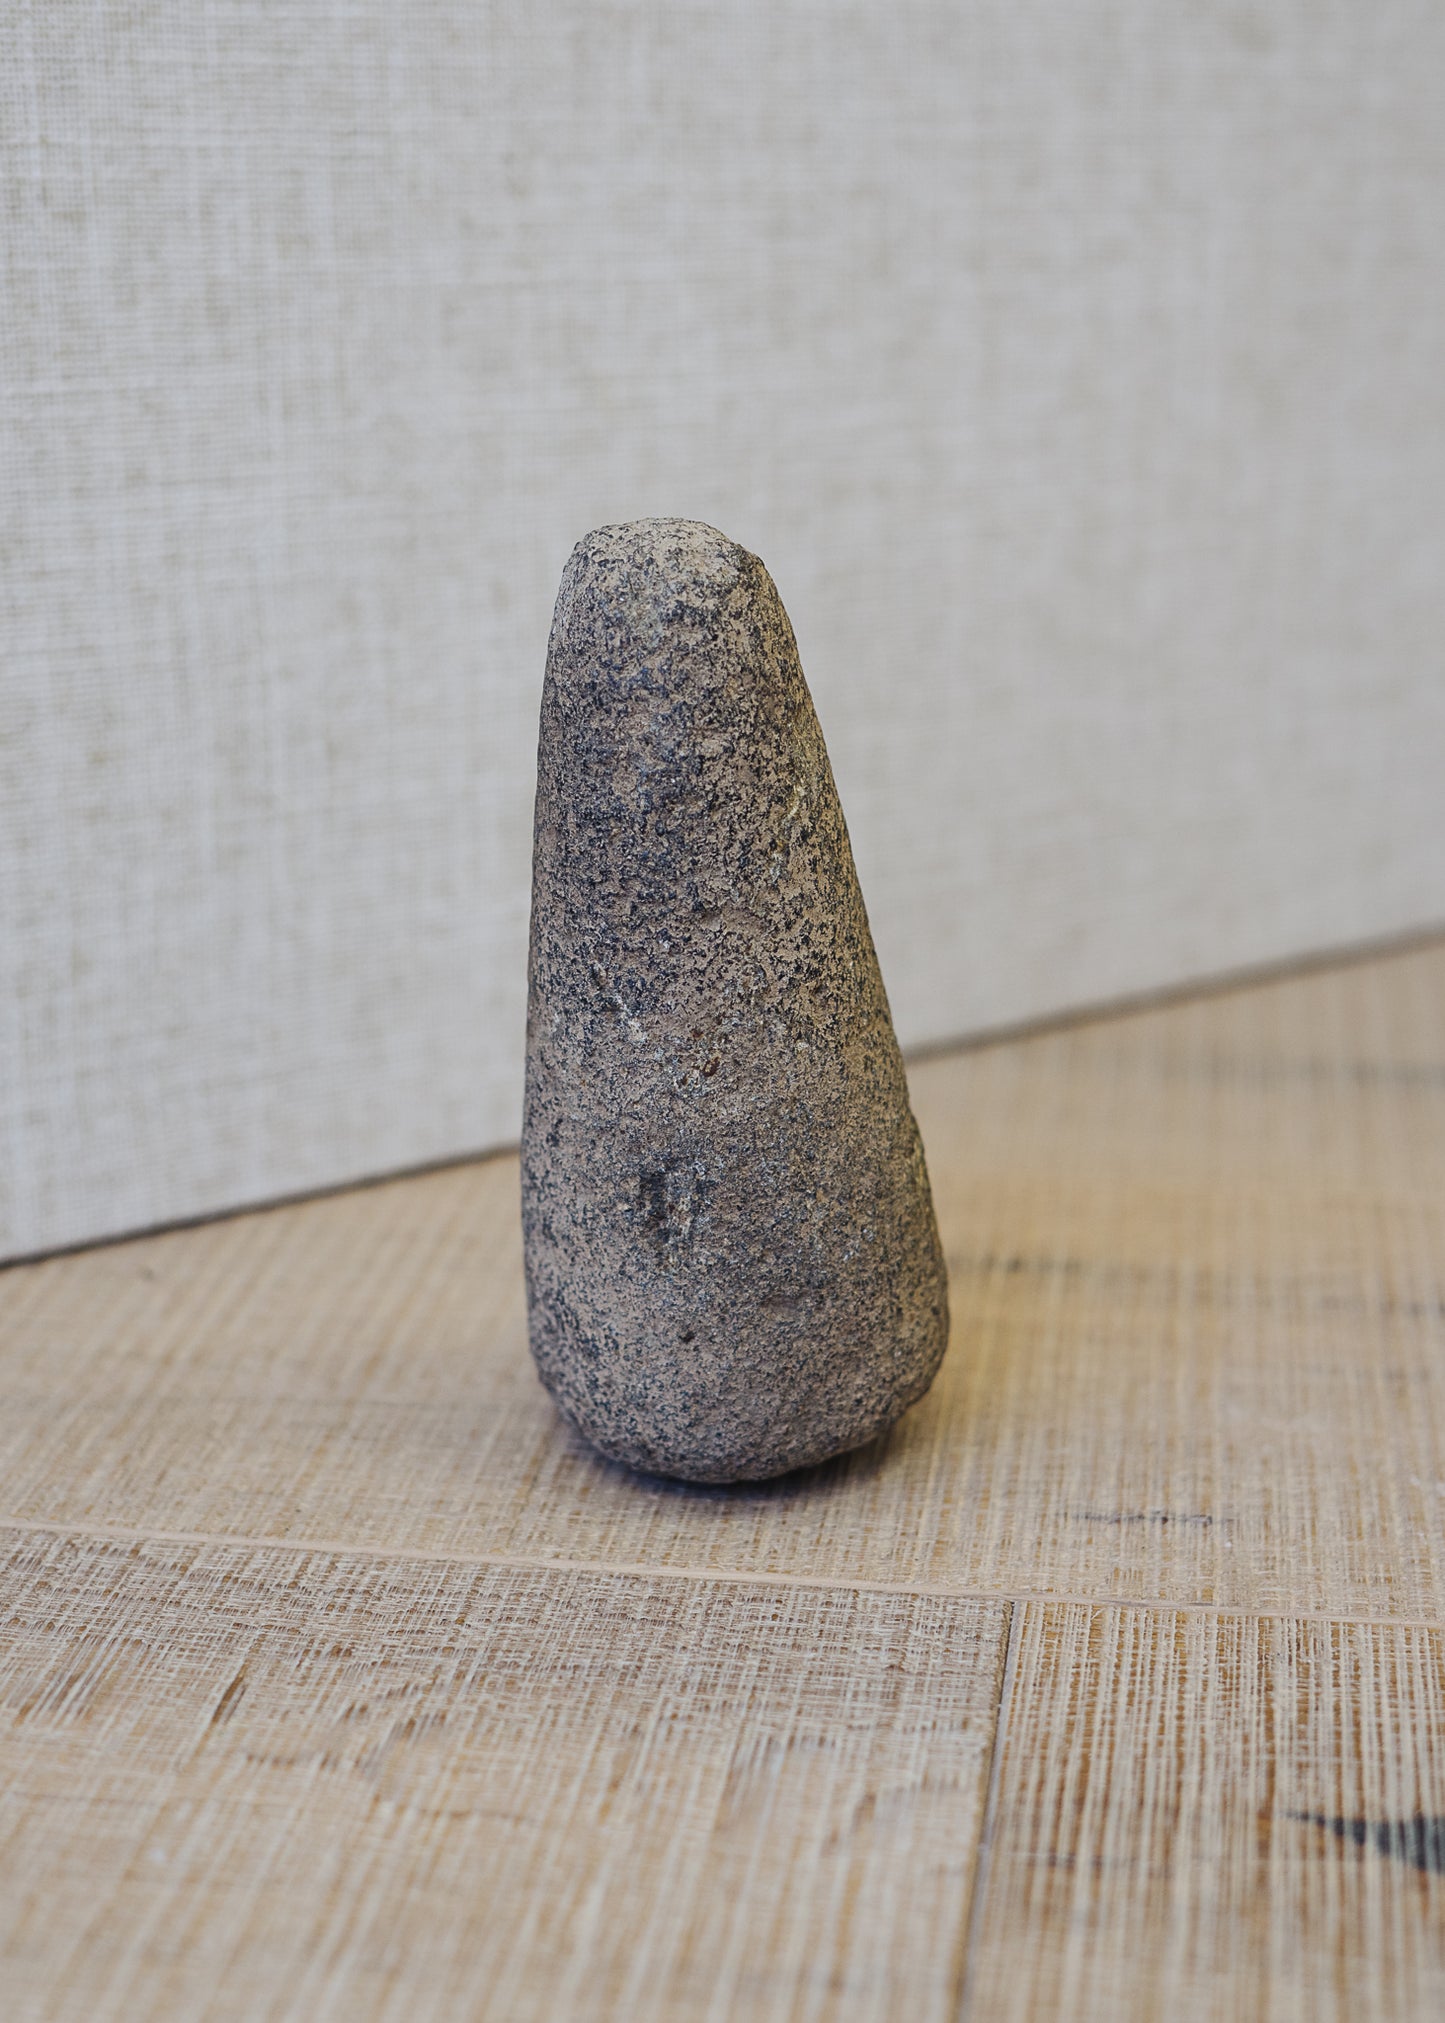 Vintage Stone Stupa Object